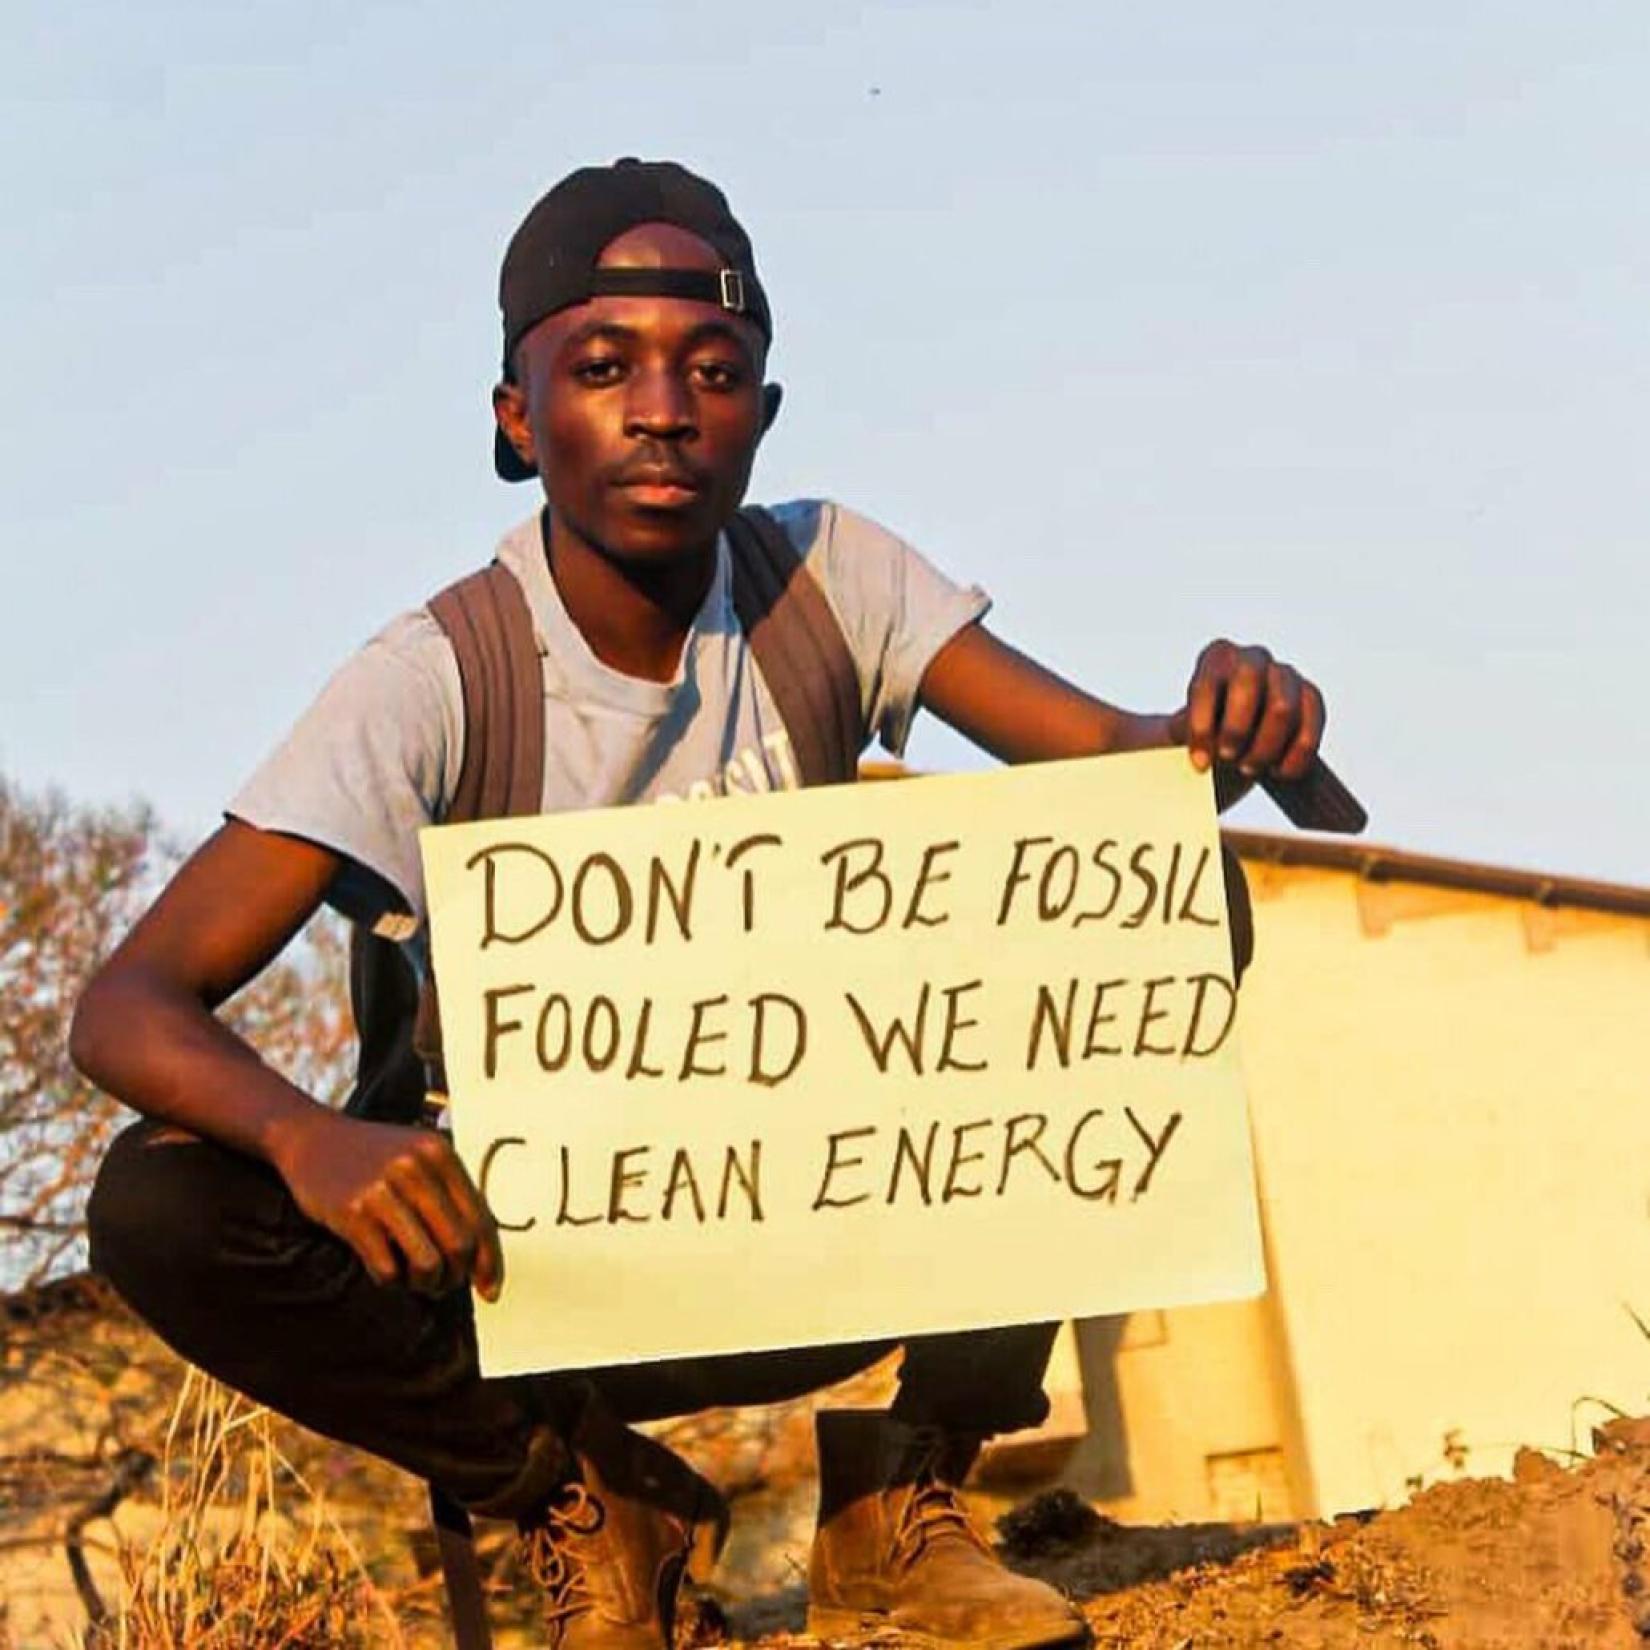 Enock fundou o grupo Heróis do Meio Ambiente, no norte da Zâmbia. Os Heróis do Meio Ambiente realizam campanhas locais de conscientização, atividades de plantio de árvores, educação sobre reciclagem e muito mais. 